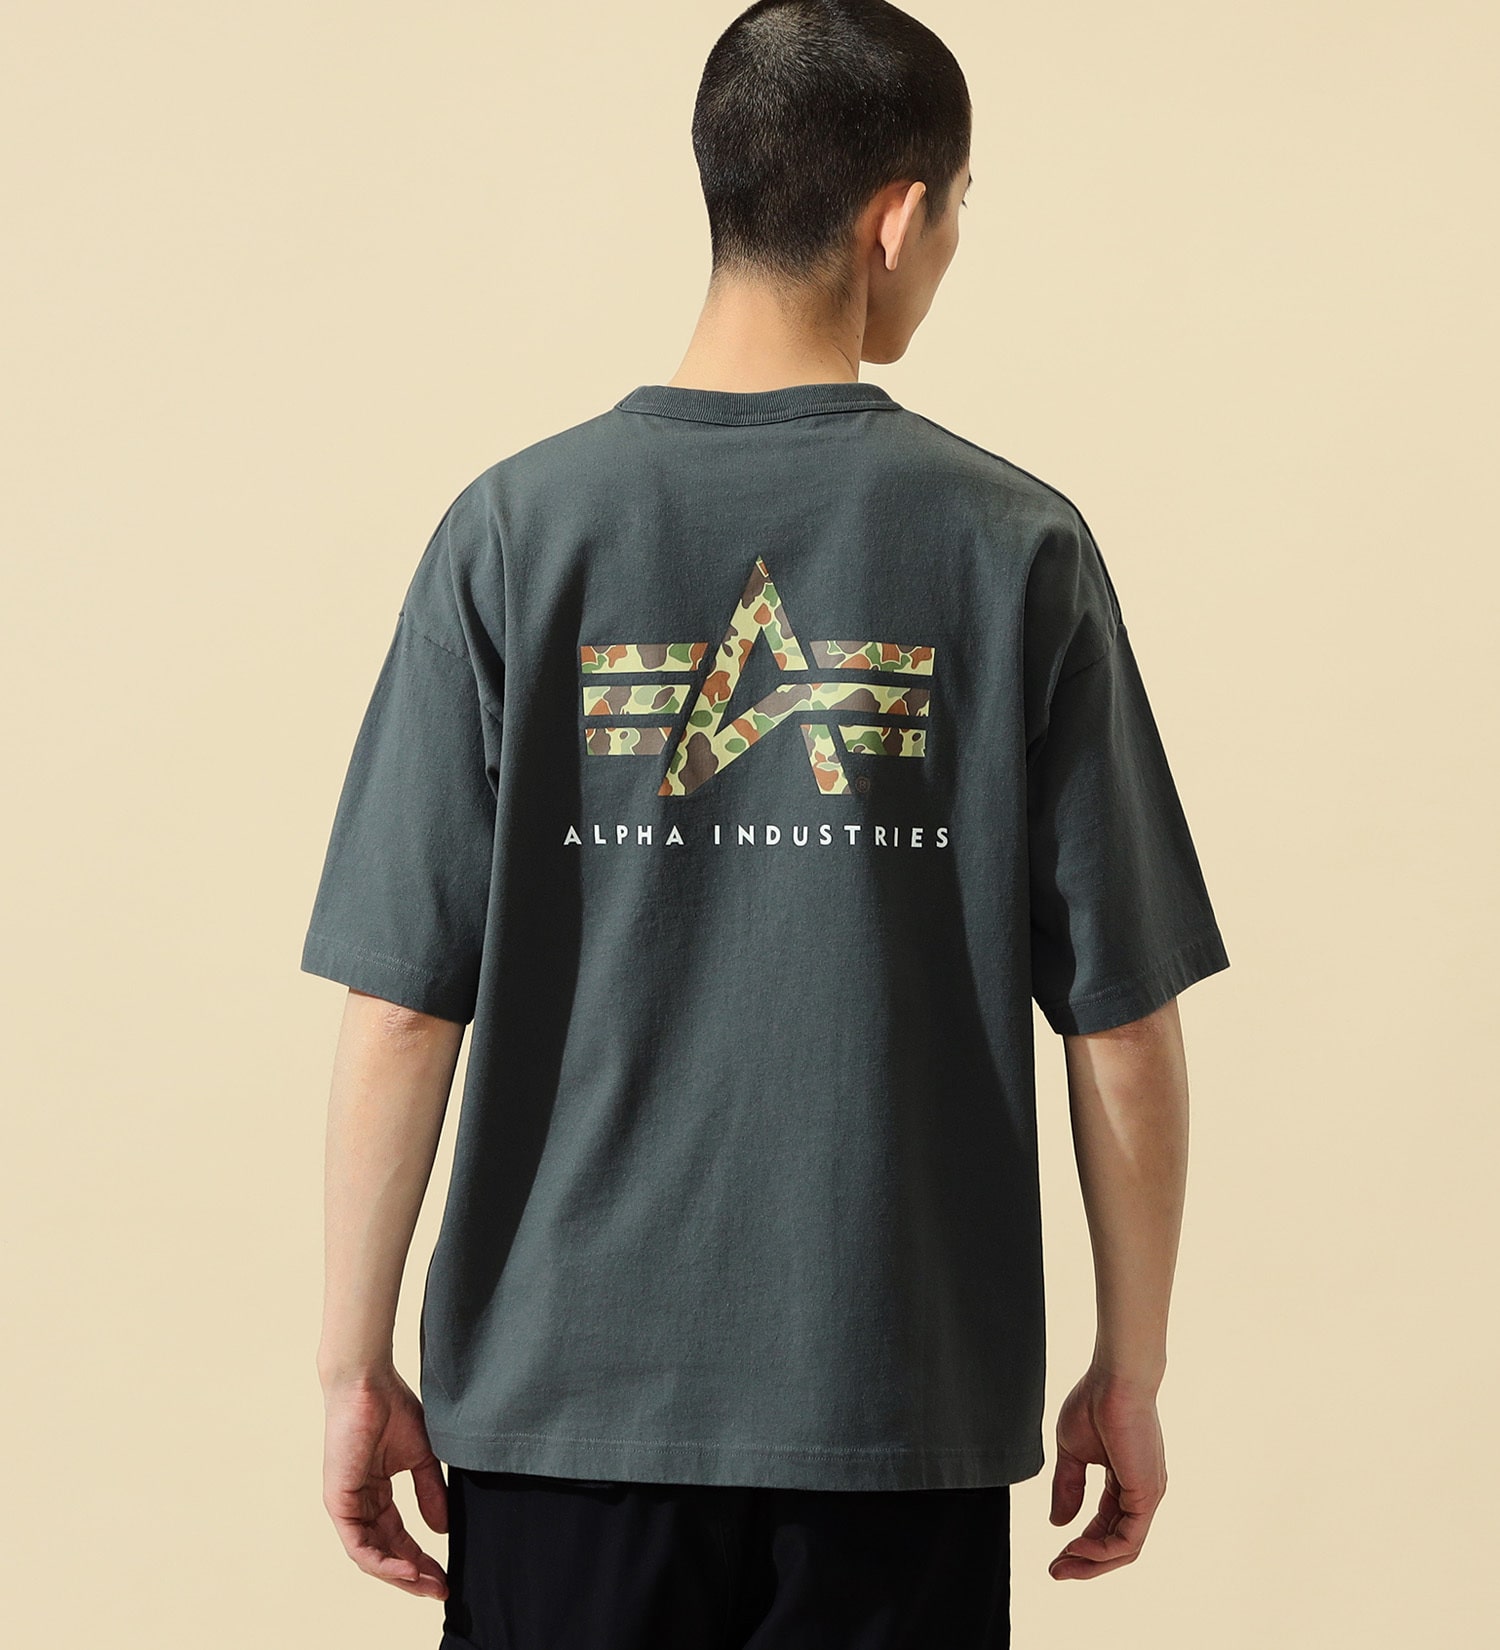 ALPHA(アルファ)のユーティリティーポケットTシャツ (カモ) 半袖|トップス/Tシャツ/カットソー/メンズ|グレー